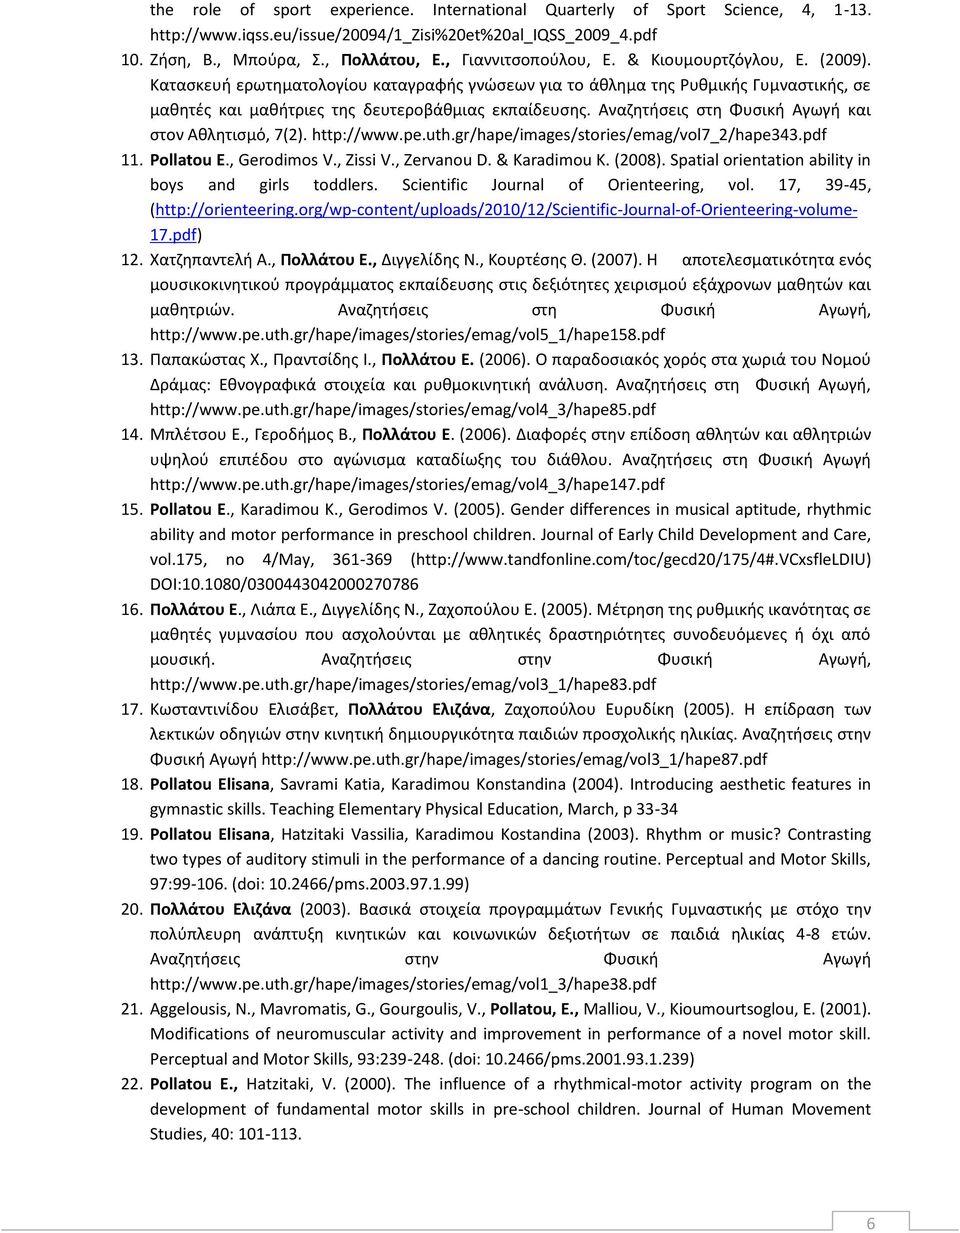 Αναζητήσεις στη Φυσική Αγωγή και στον Αθλητισμό, 7(2). http://www.pe.uth.gr/hape/images/stories/emag/vol7_2/hape343.pdf 11. Pollatou E., Gerodimos V., Zissi V., Zervanou D. & Karadimou K. (2008).